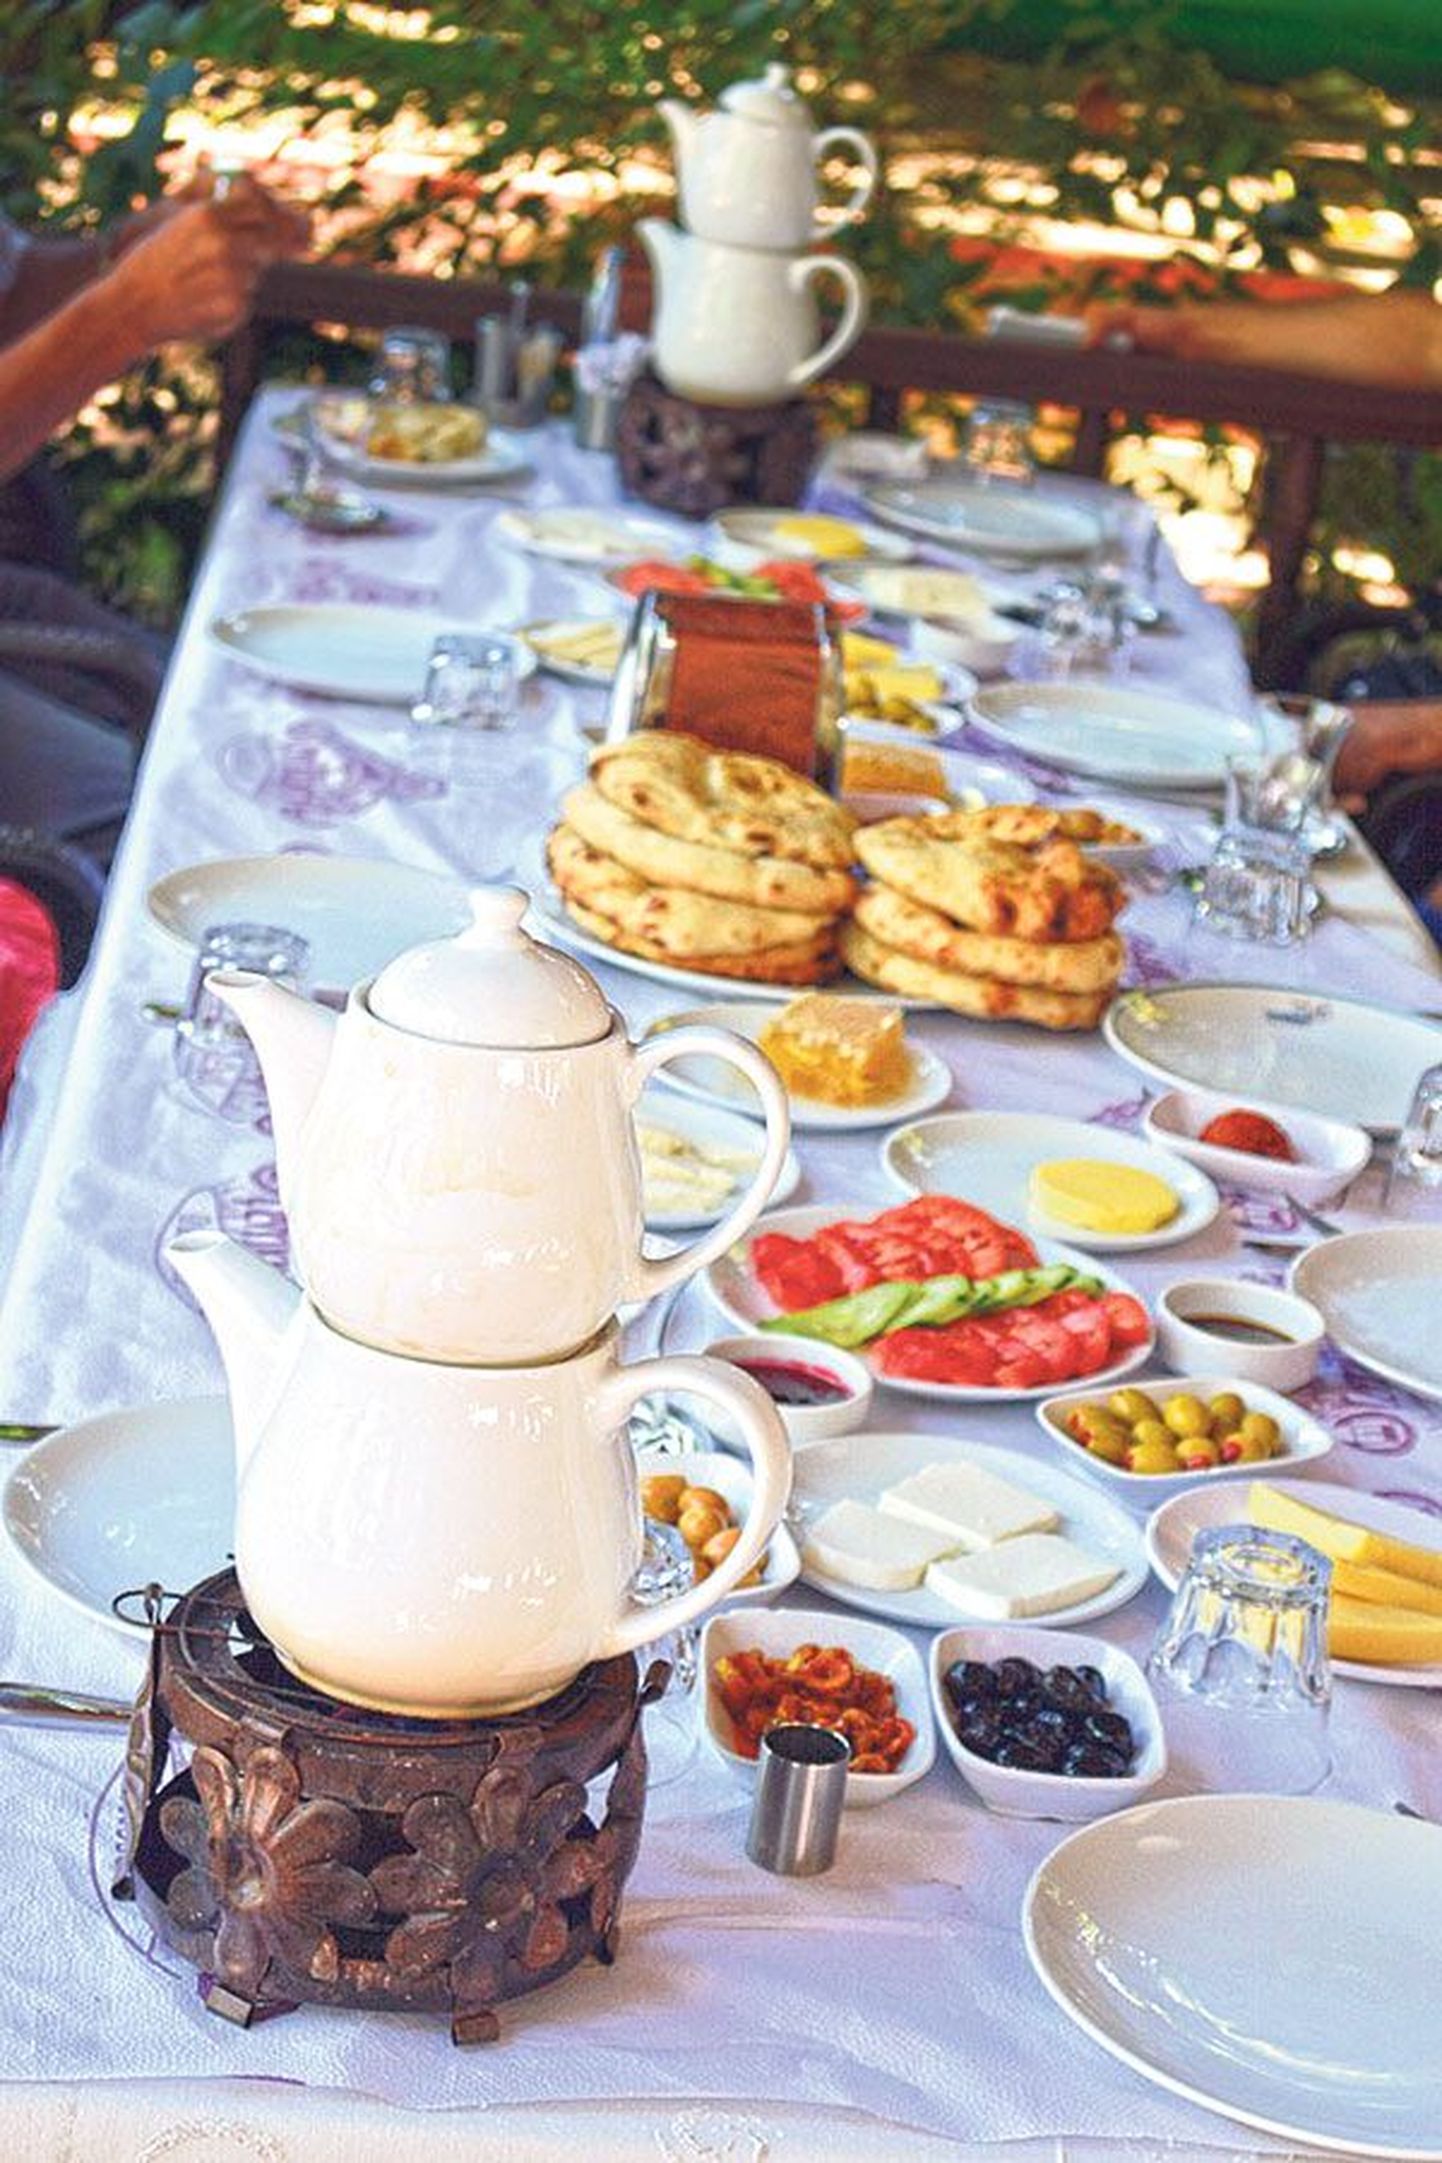 Щедрый турецкий завтрак состоит из всевозможных экзотических блюд.